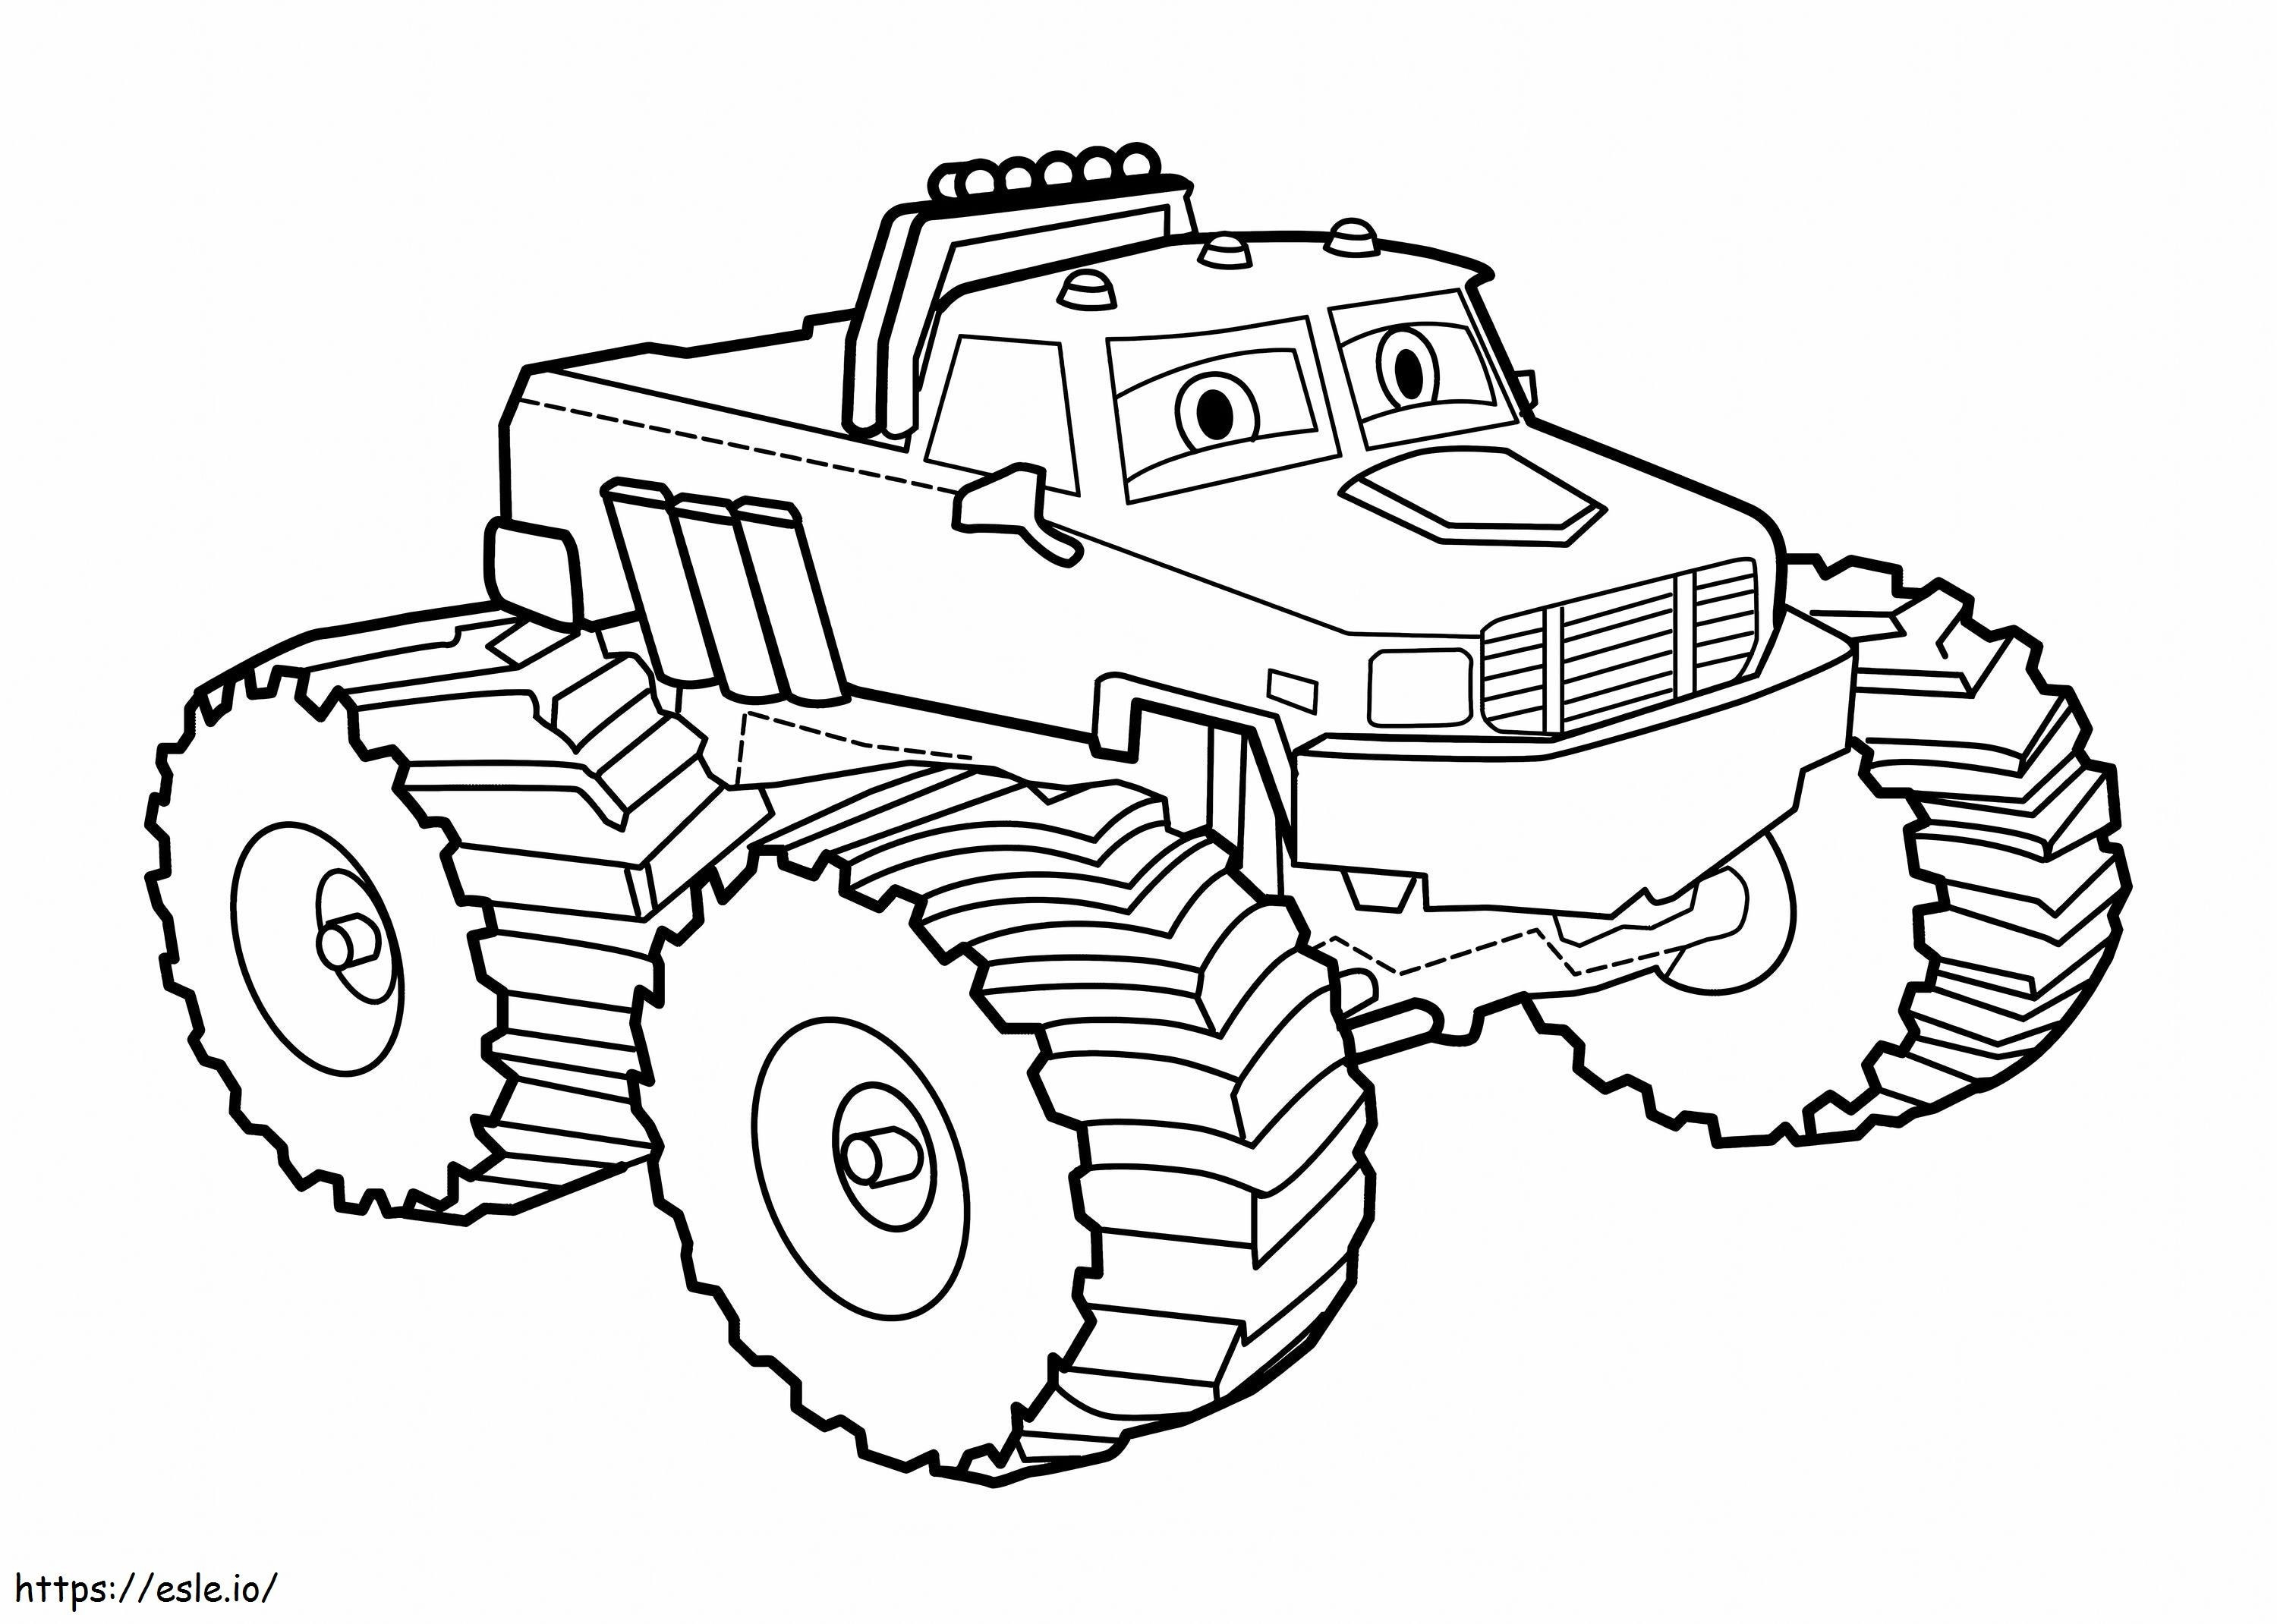  Cars Disegni Da Colorare New Tow Mater Free Best Cartoon Cars Art Disegni Di Cars Disegni Da Colorare da colorare